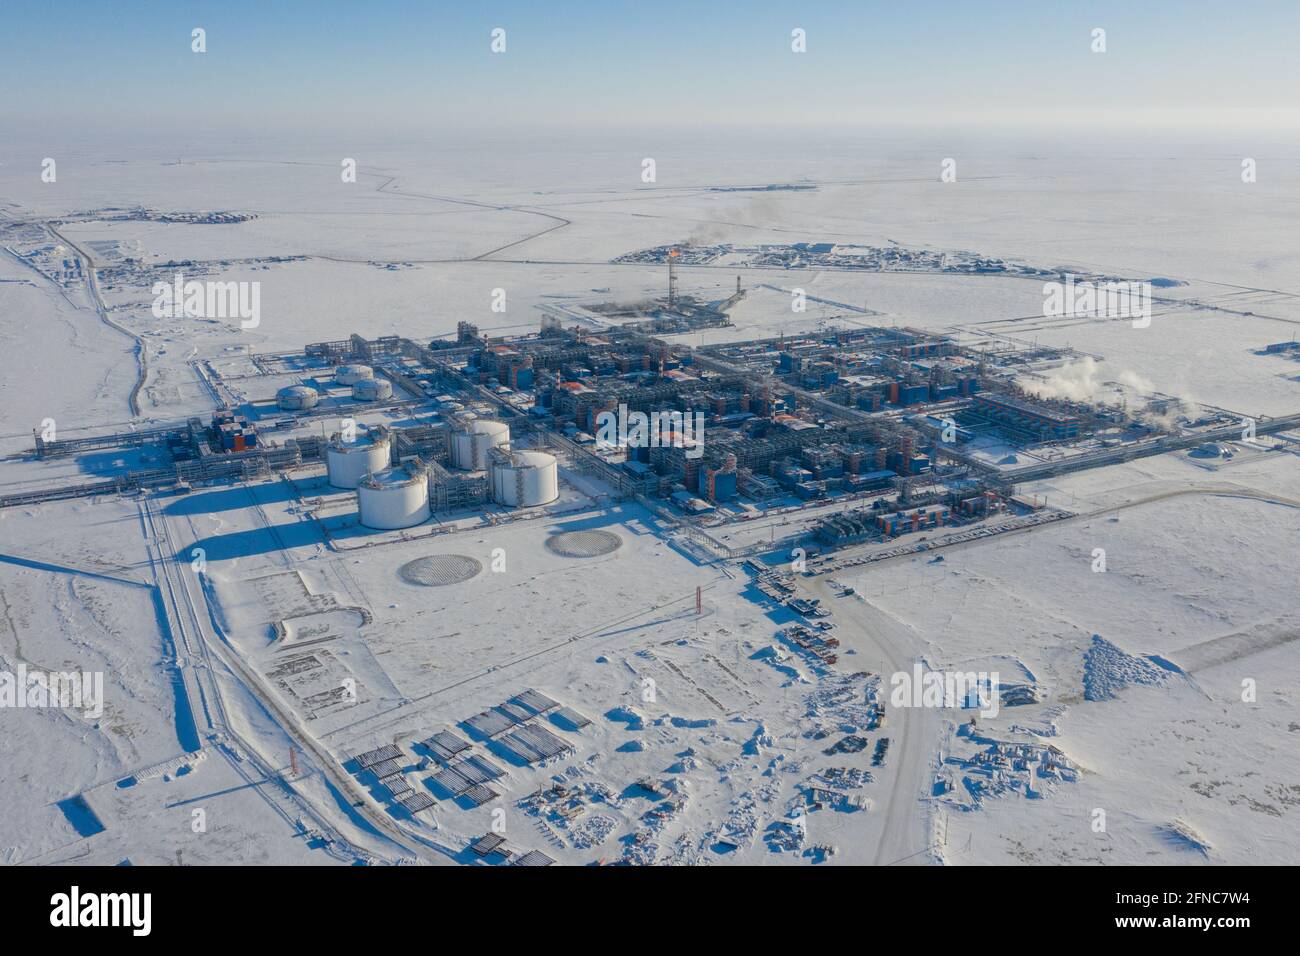 Sabetta, regione del Tyumen, Russia - 31 marzo 2021: Impianto di lavorazione del gas naturale in Russia. Una pianta nell'estremo nord. Foto Stock